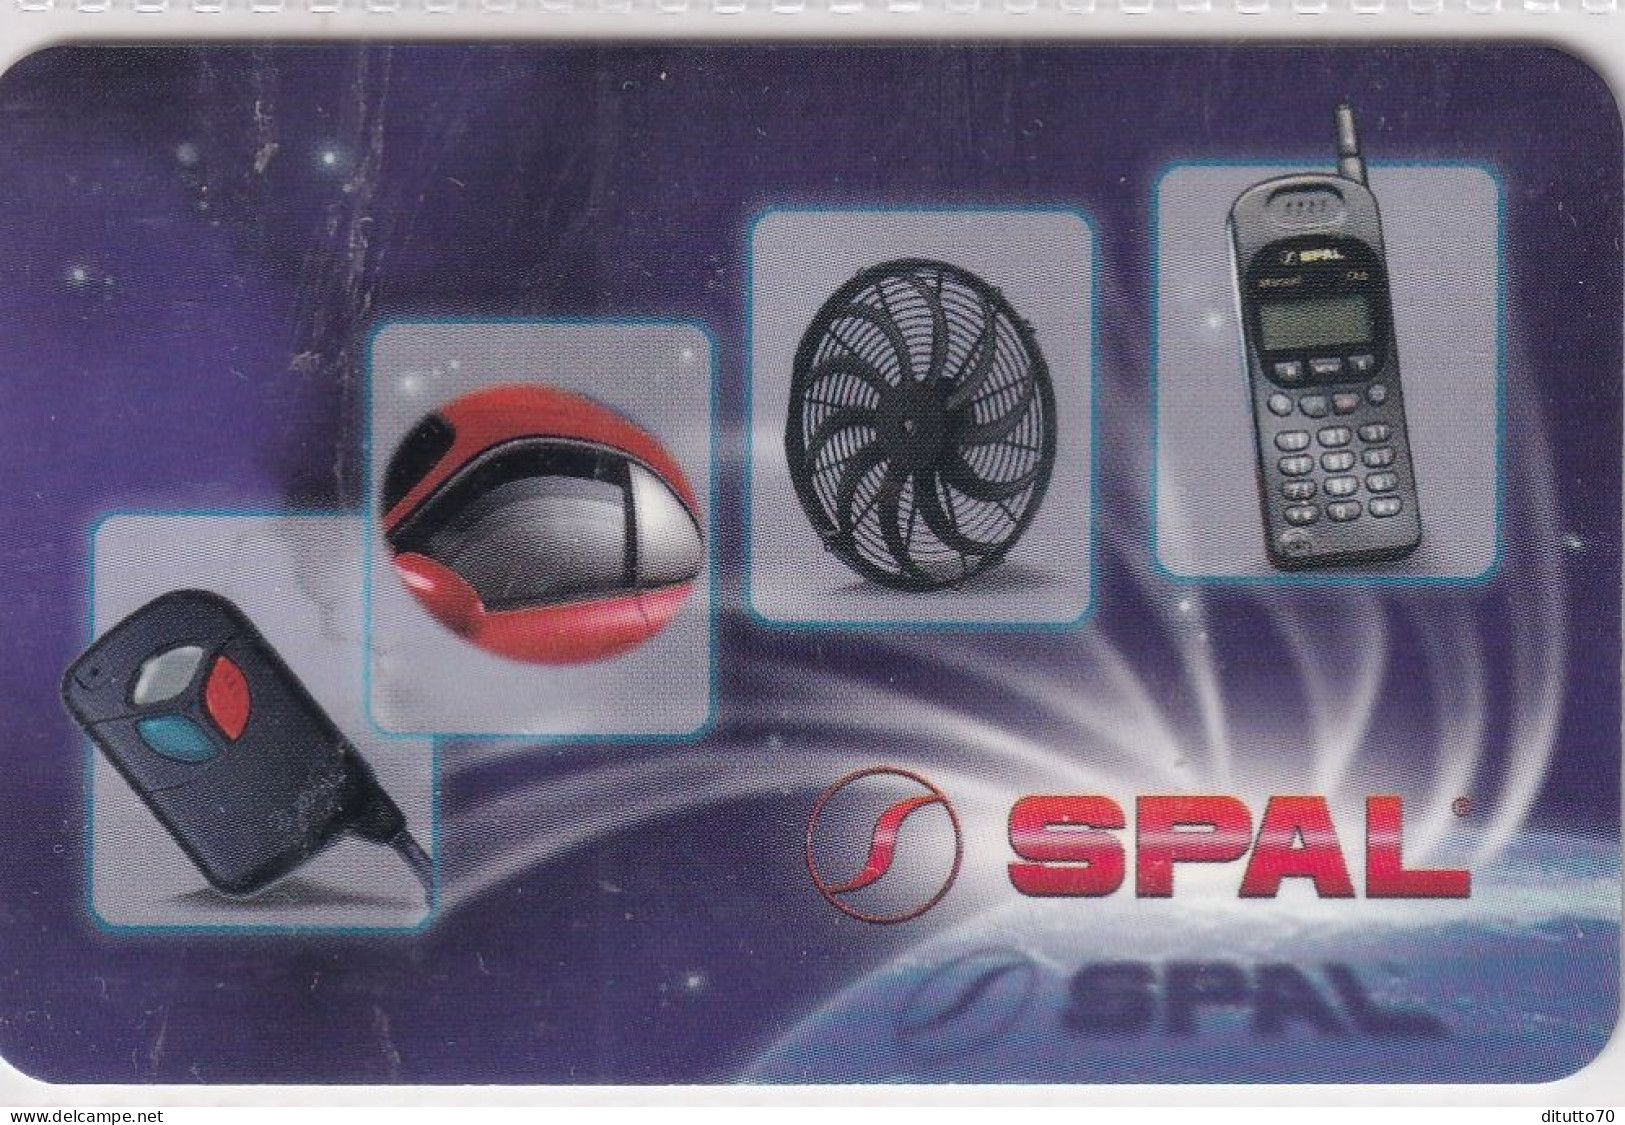 Calendarietto - Spal - Correggio - Anno 1998 - Small : 1991-00